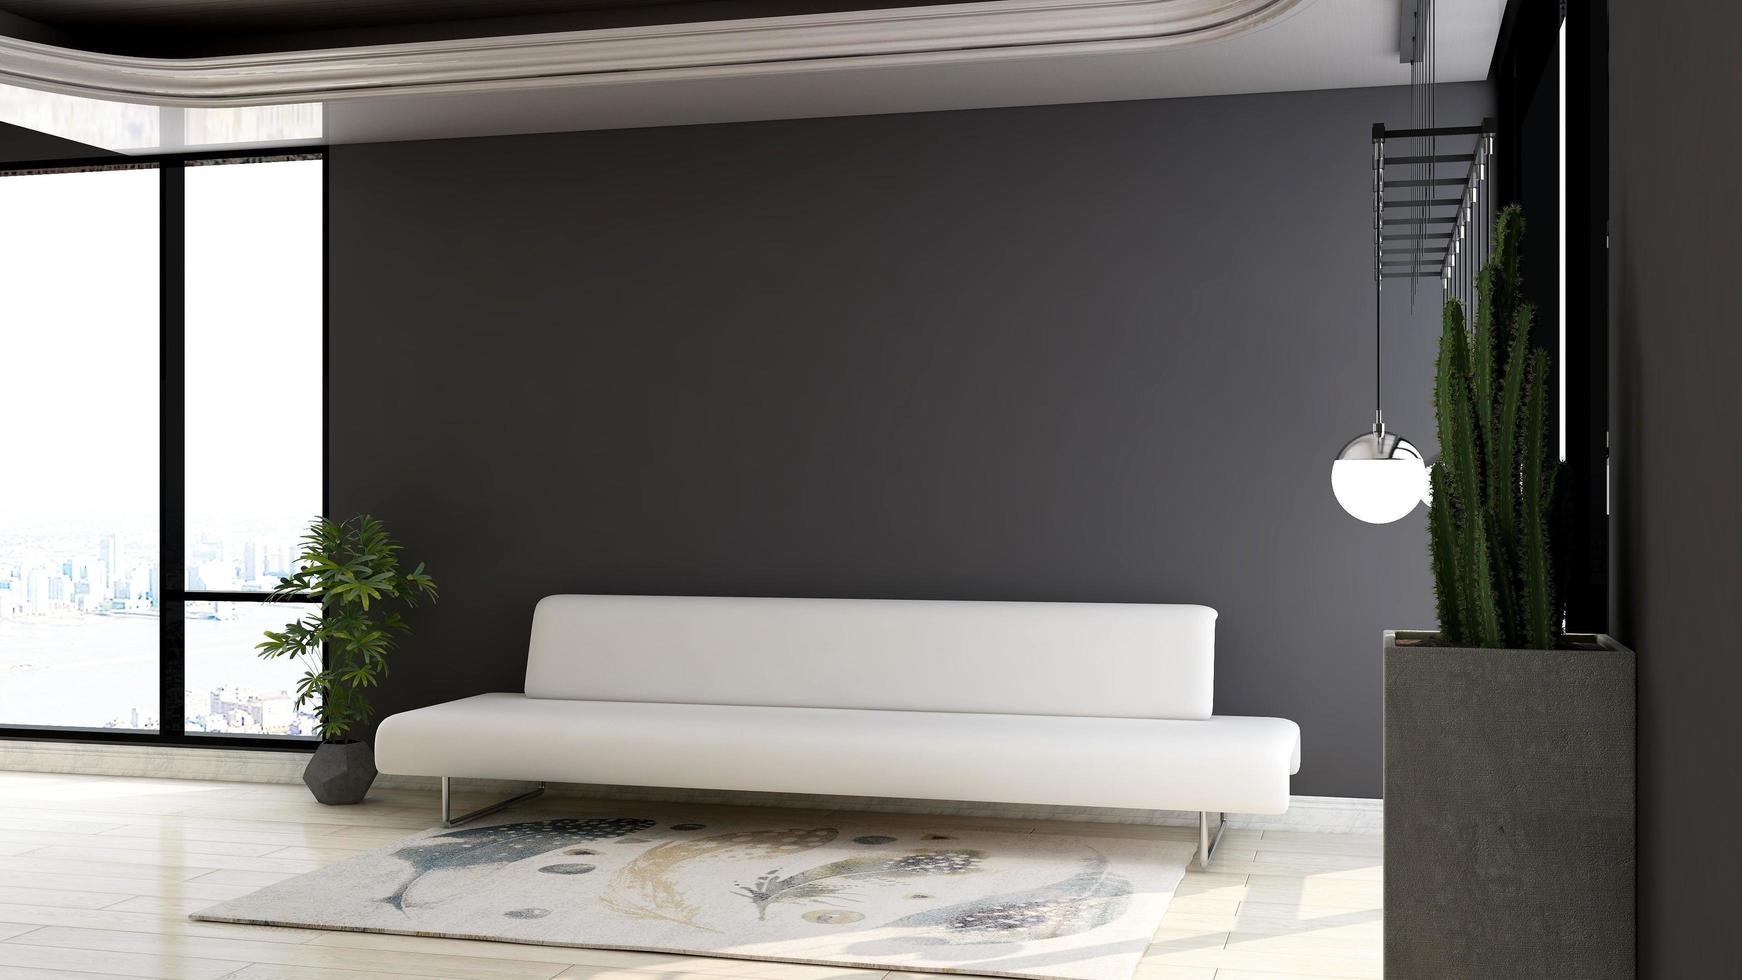 Diseño de maqueta de pared de salón de renderizado 3d con concepto de diseño de interiores minimalista moderno foto